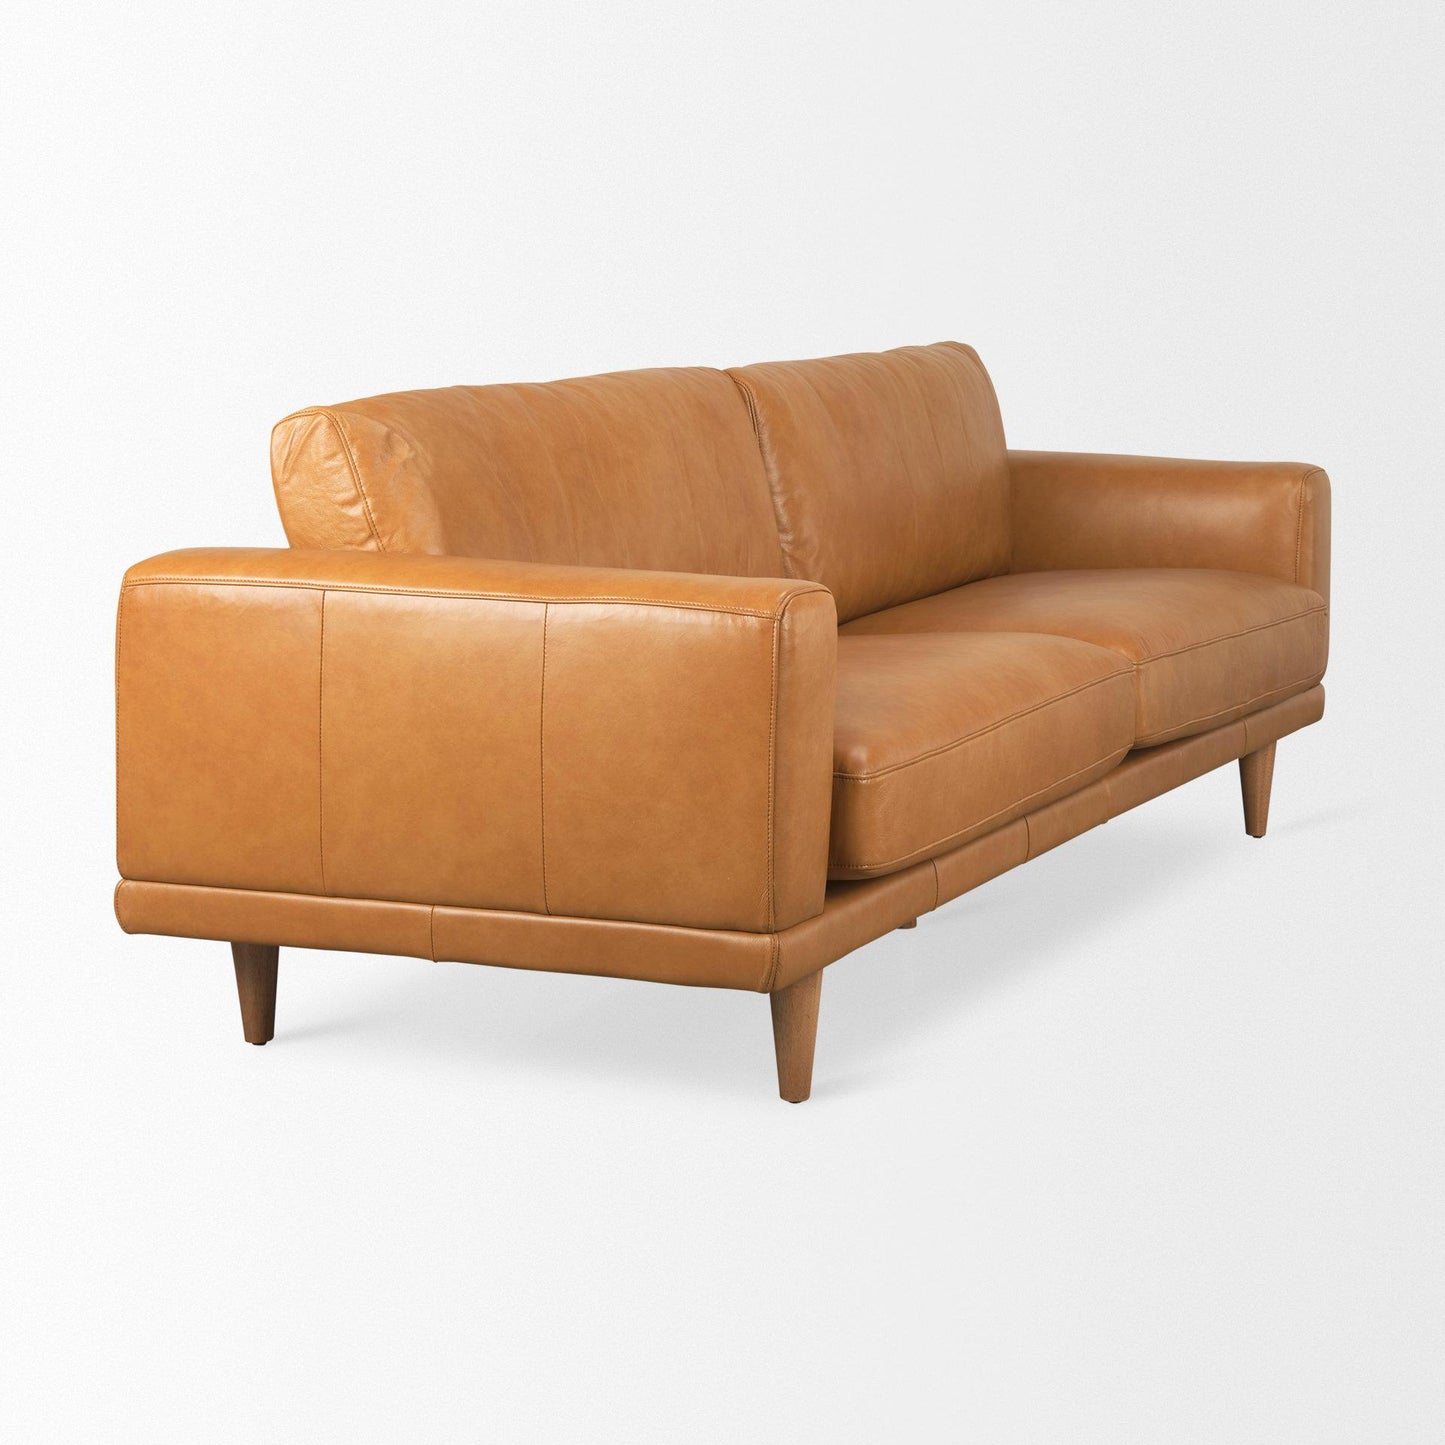 Cedrick 90.6L x 36.6W x 31.5H Tan Leather Sofa